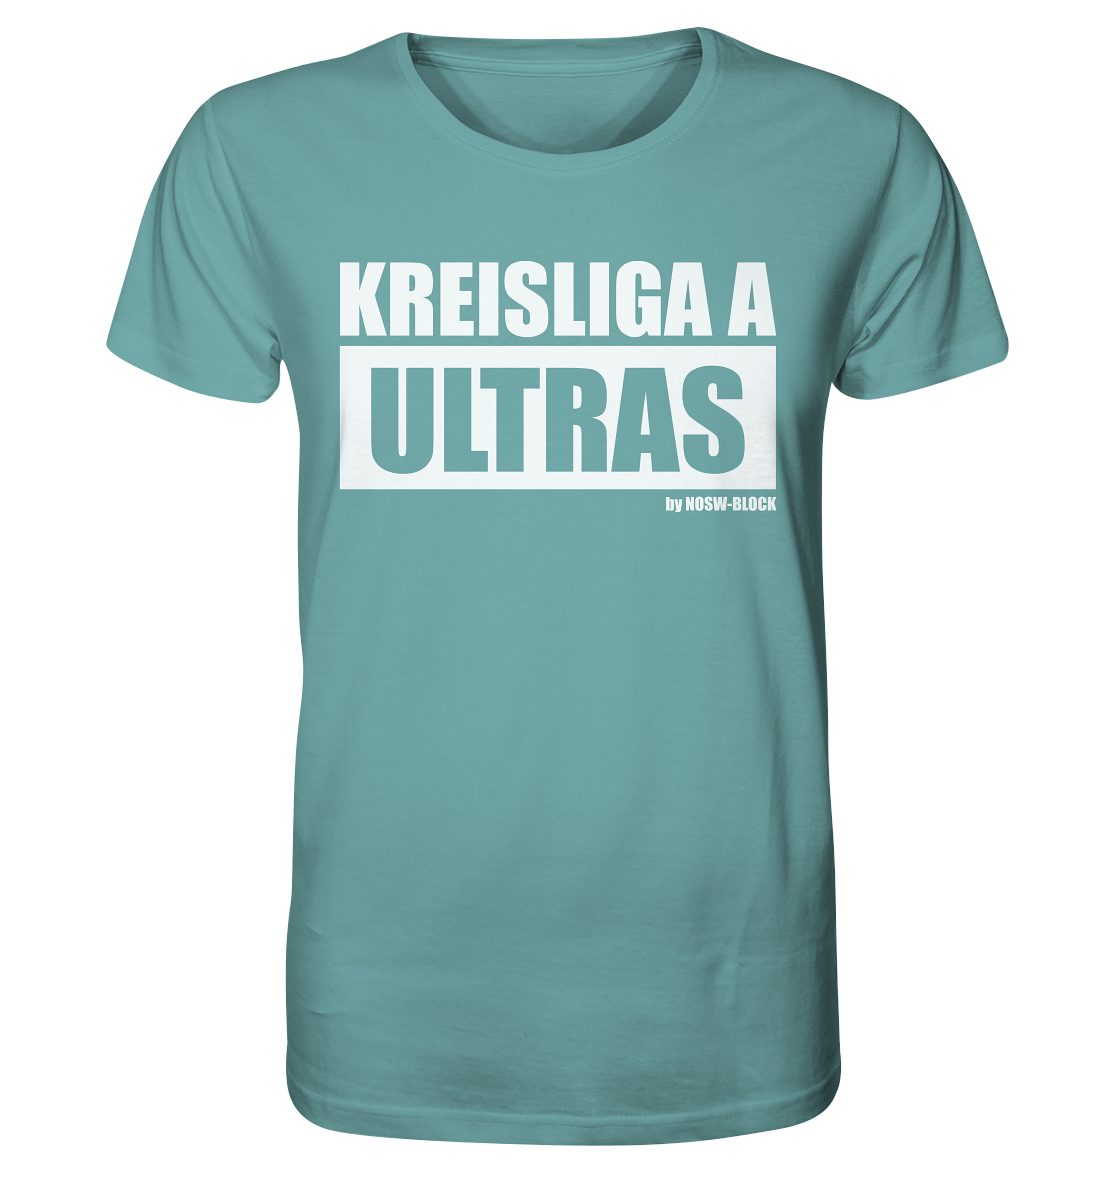 N.O.S.W. BLOCK Fanblock Ultras Shirt "KREISLIGA A ULTRAS" Männer Organic Rundhals T-Shirt citadel blue